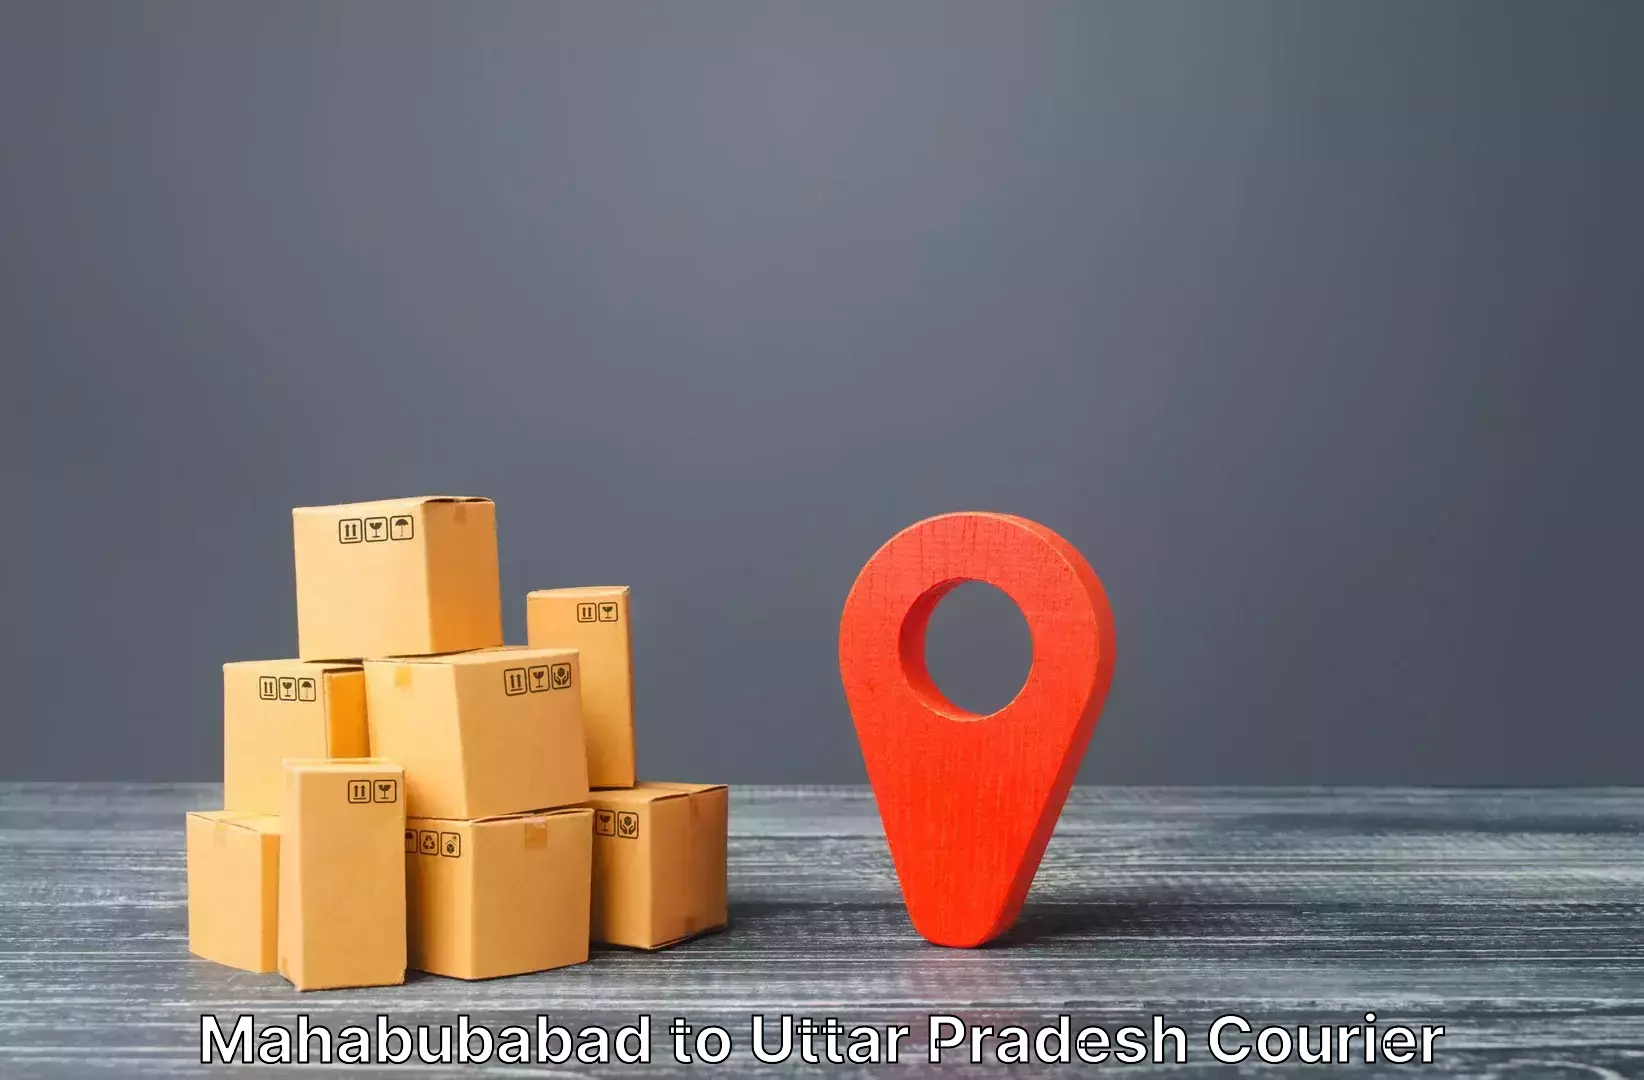 Baggage shipping advice Mahabubabad to Deoband